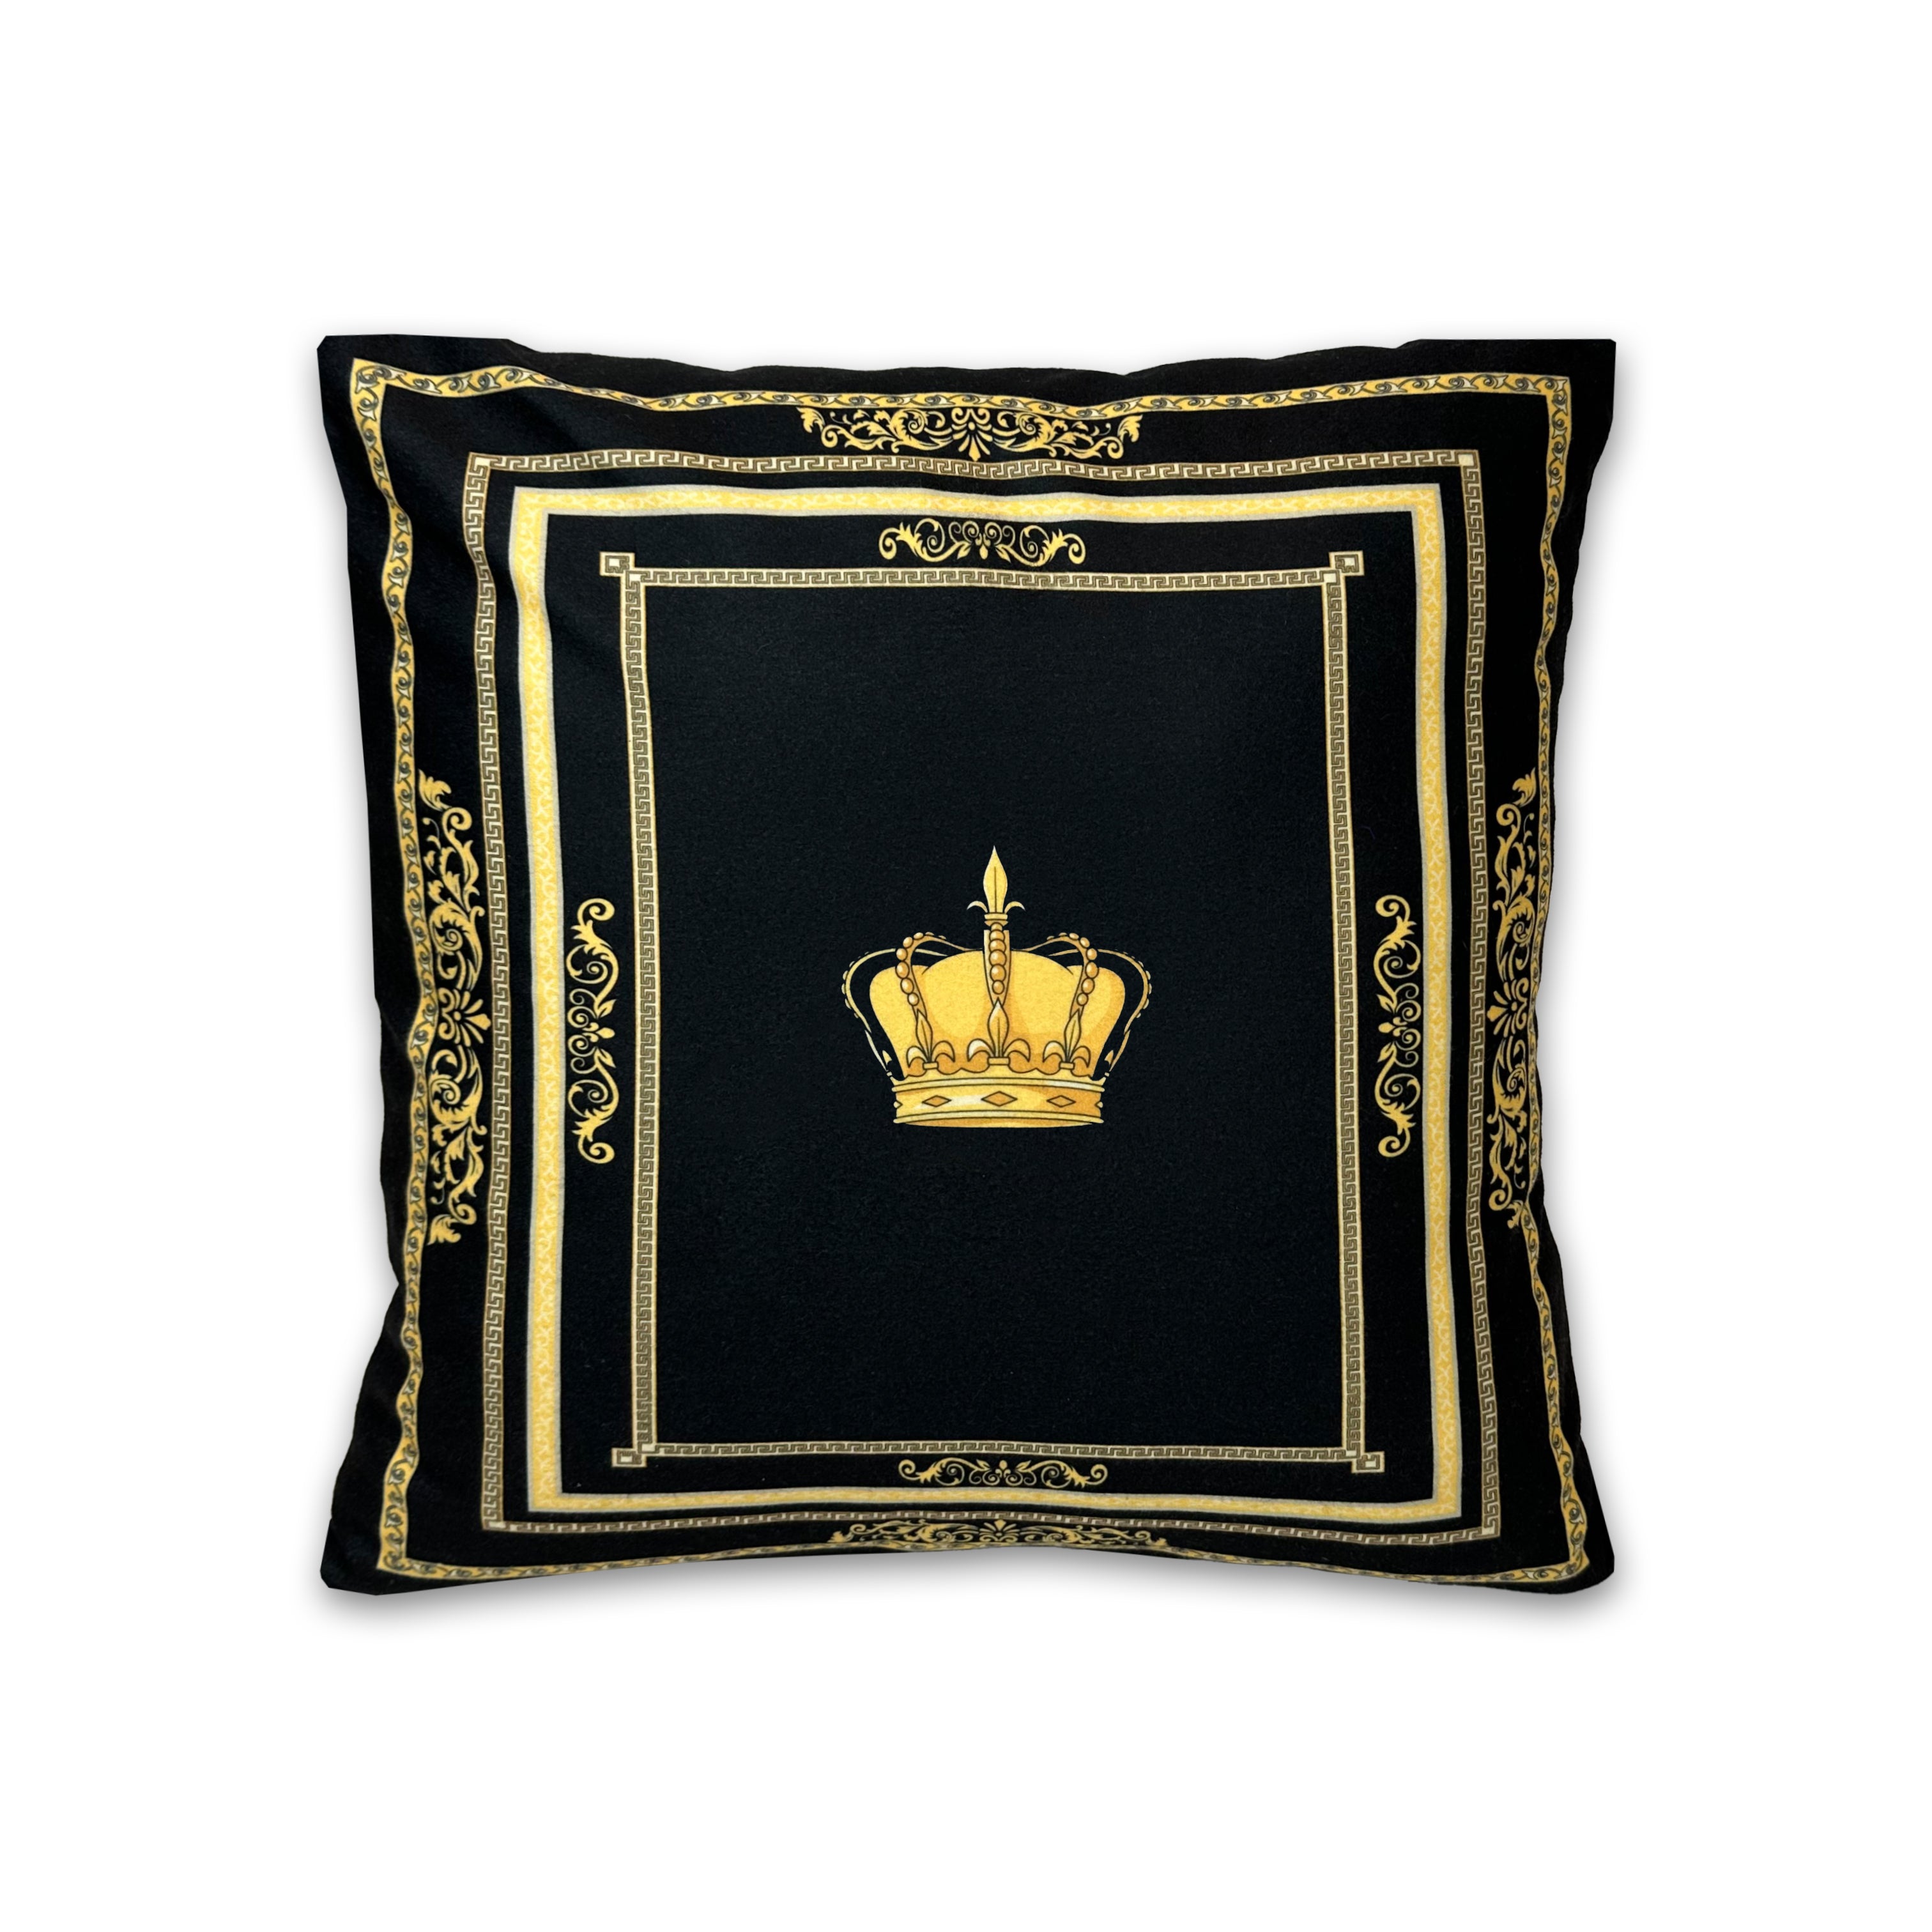 Dekorative Kissen mit Krone Motiv Seiden Look in schwarz gold mit Kissenbezug